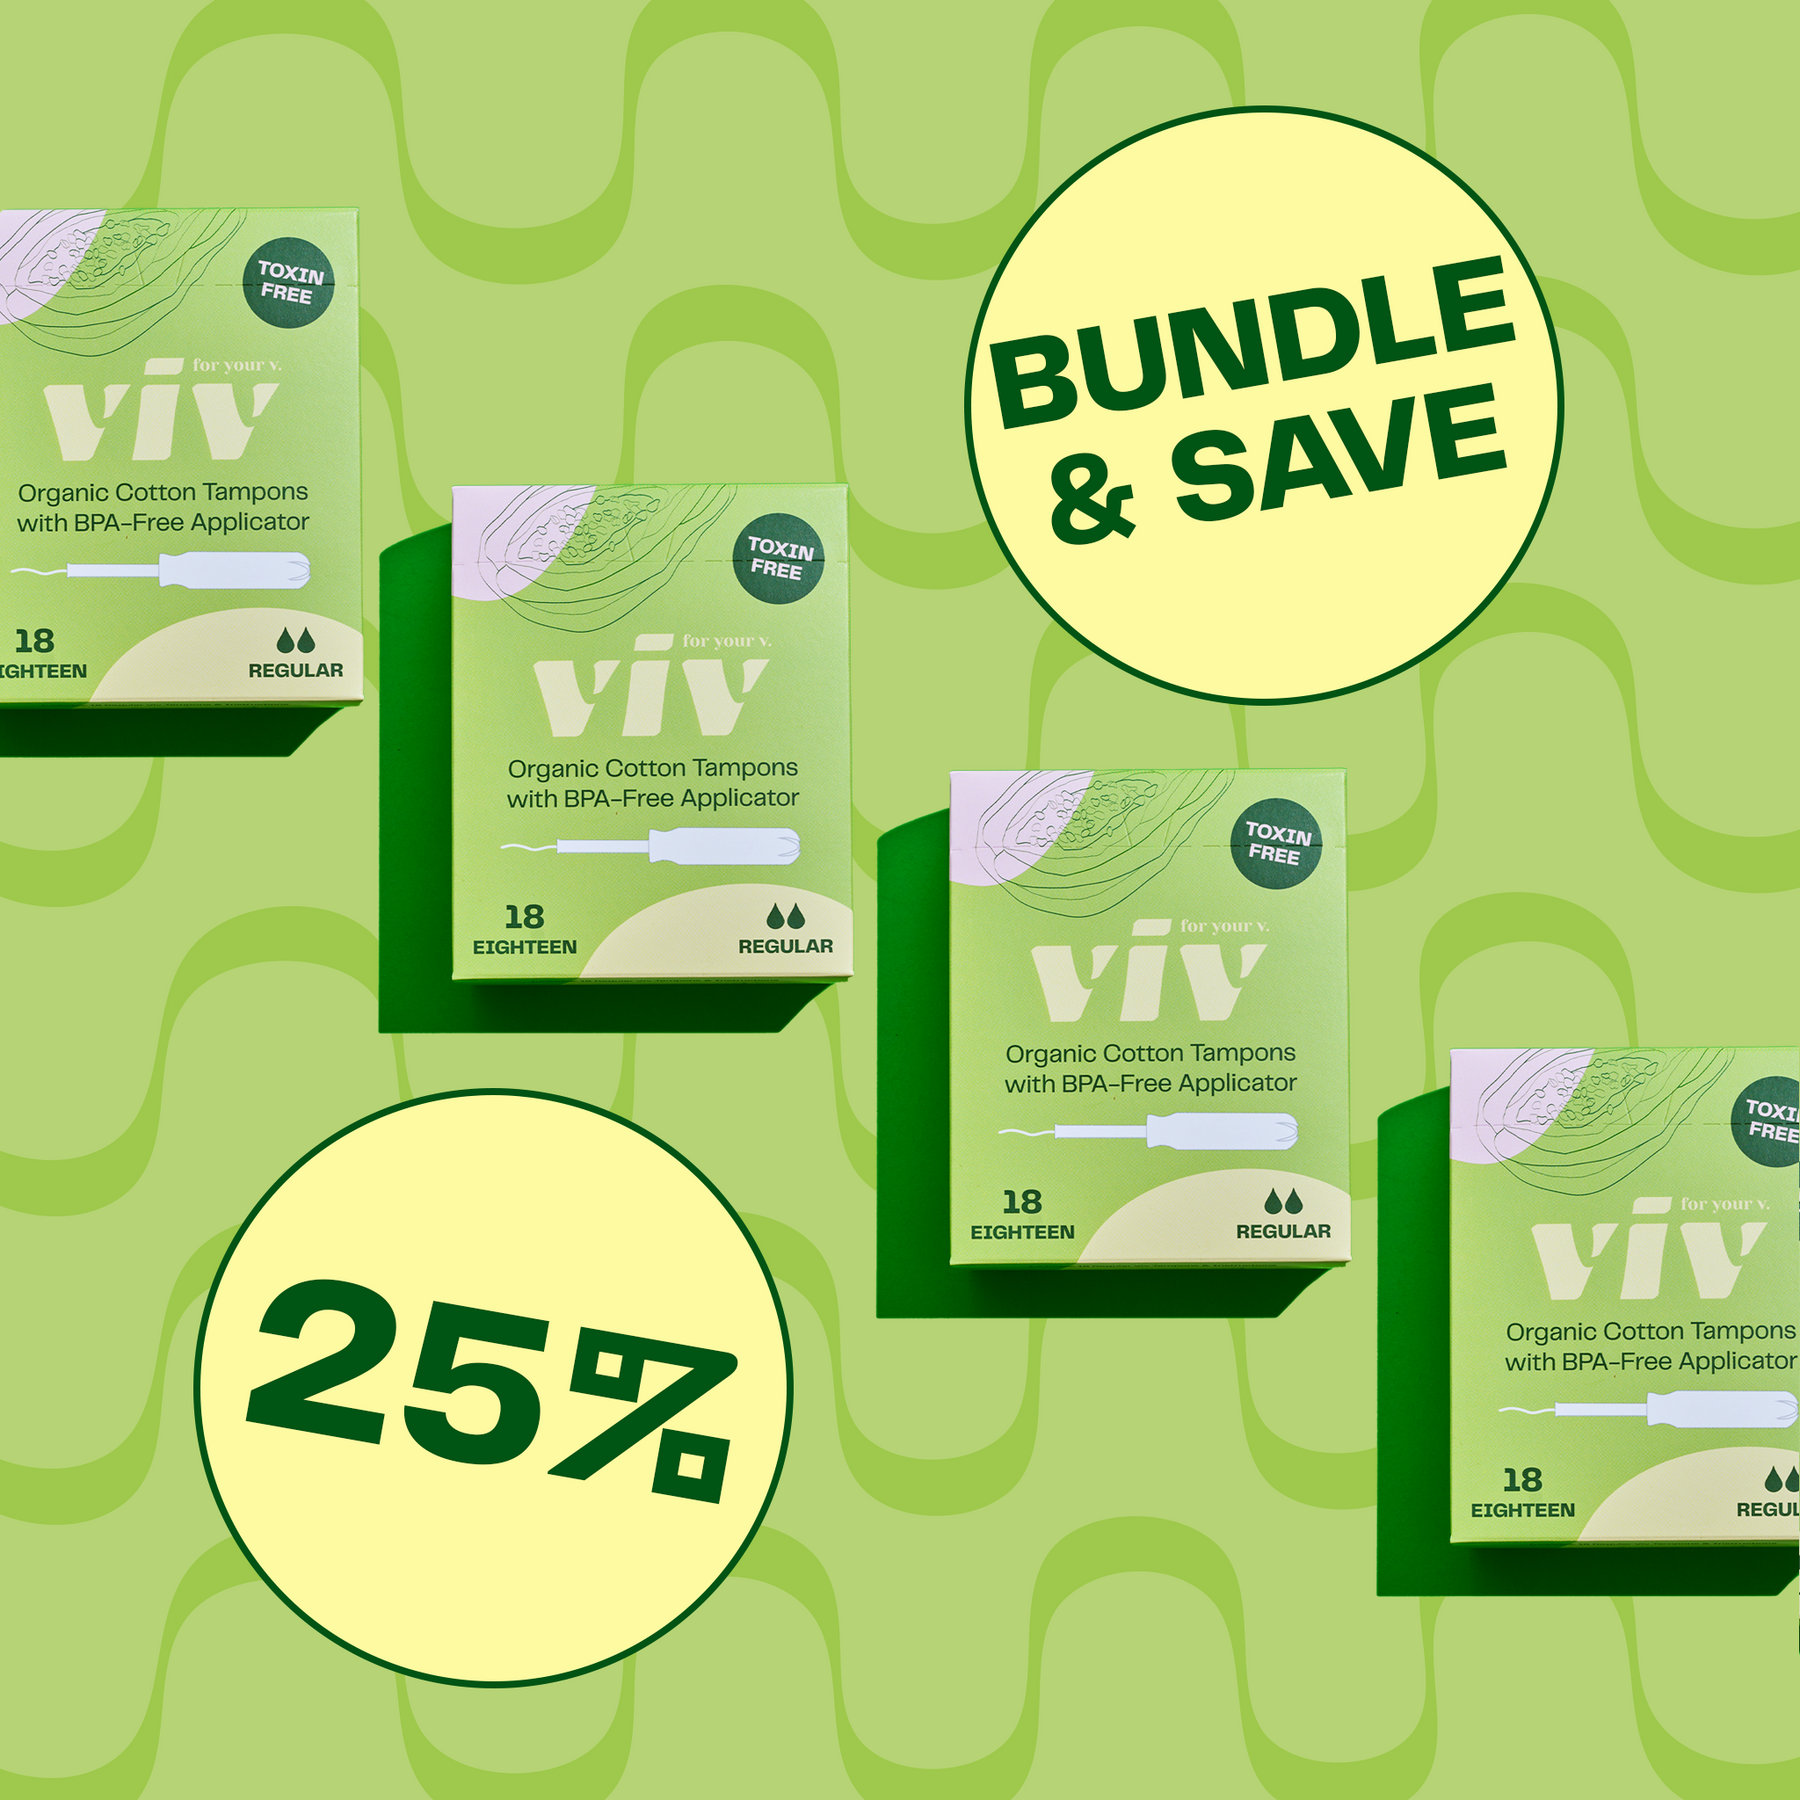  Viv For Your V Tampons - 100% Organic Cotton Tampons